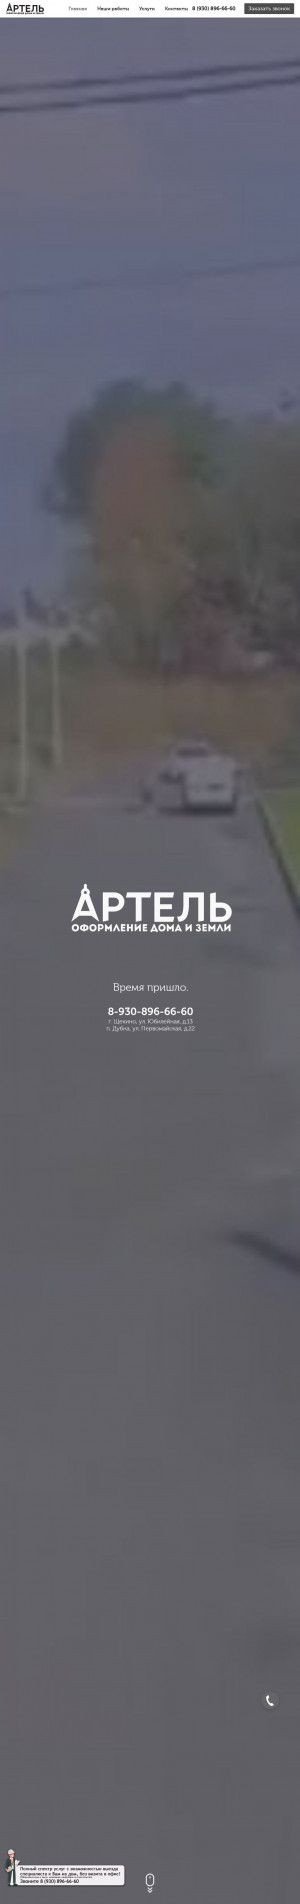 Предпросмотр для kadastrcenter.ru — Артель